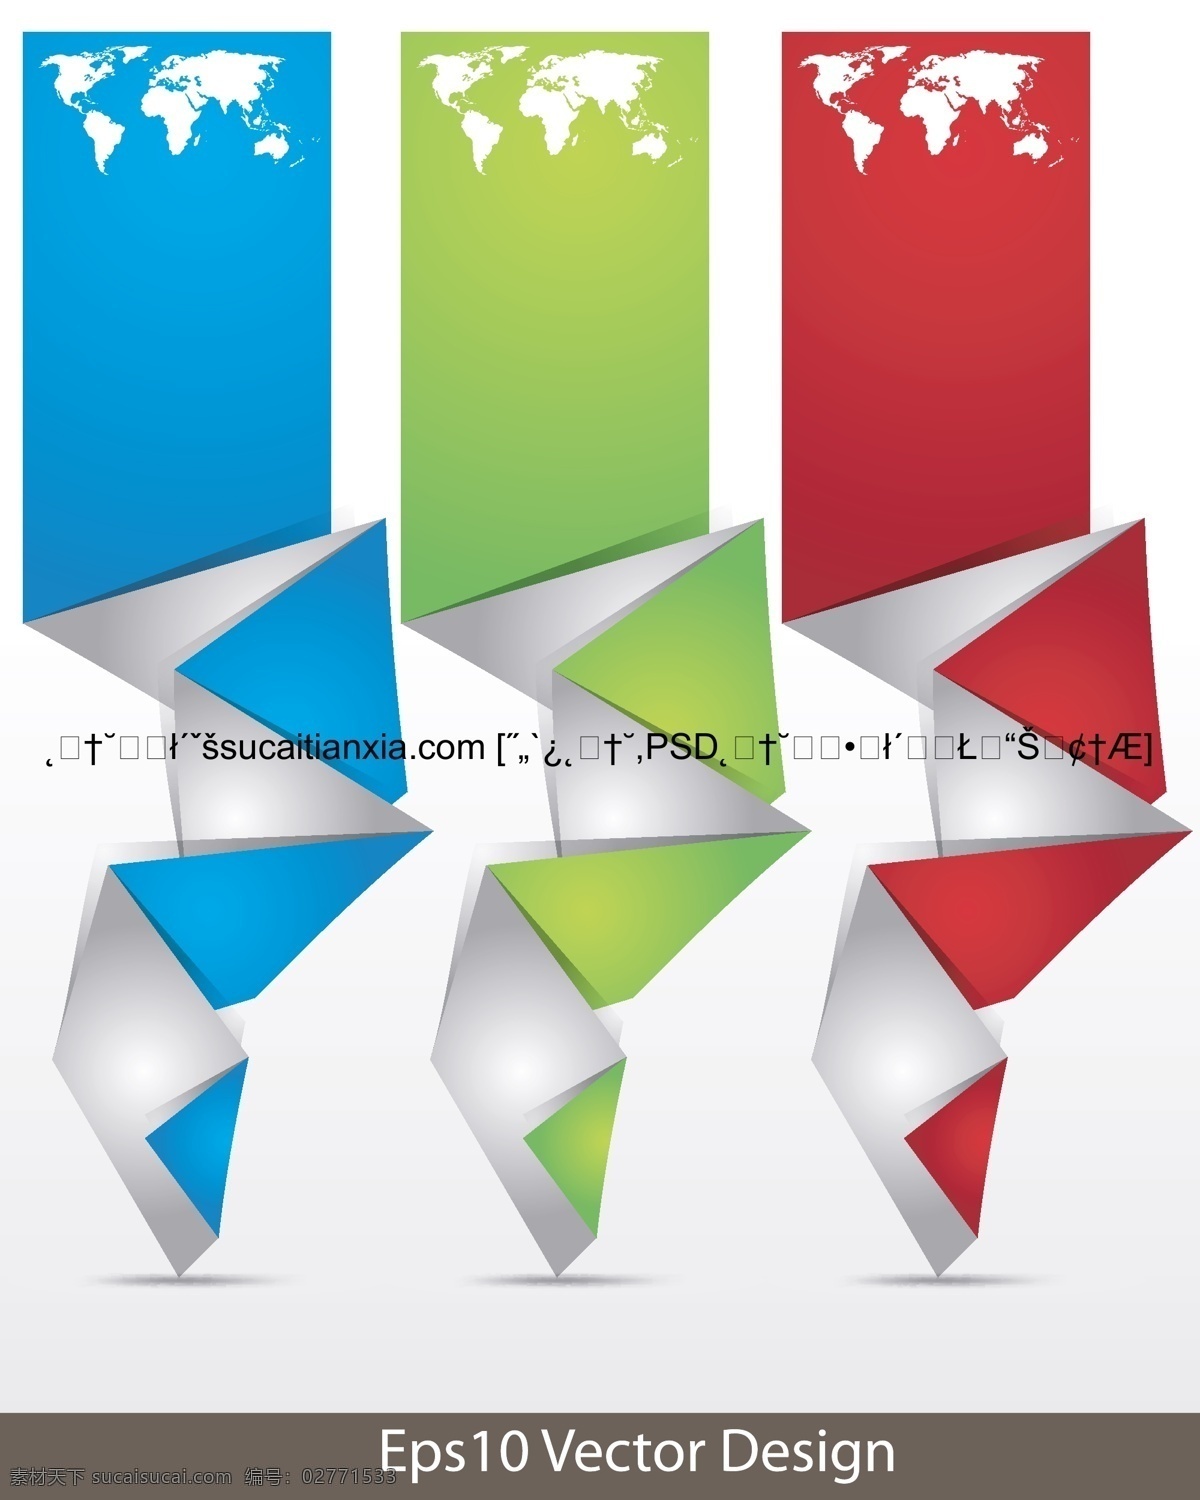 矢量 立体 折纸 彩色 图形 创意图形 几何形状 立体折纸 矢量图 其他矢量图